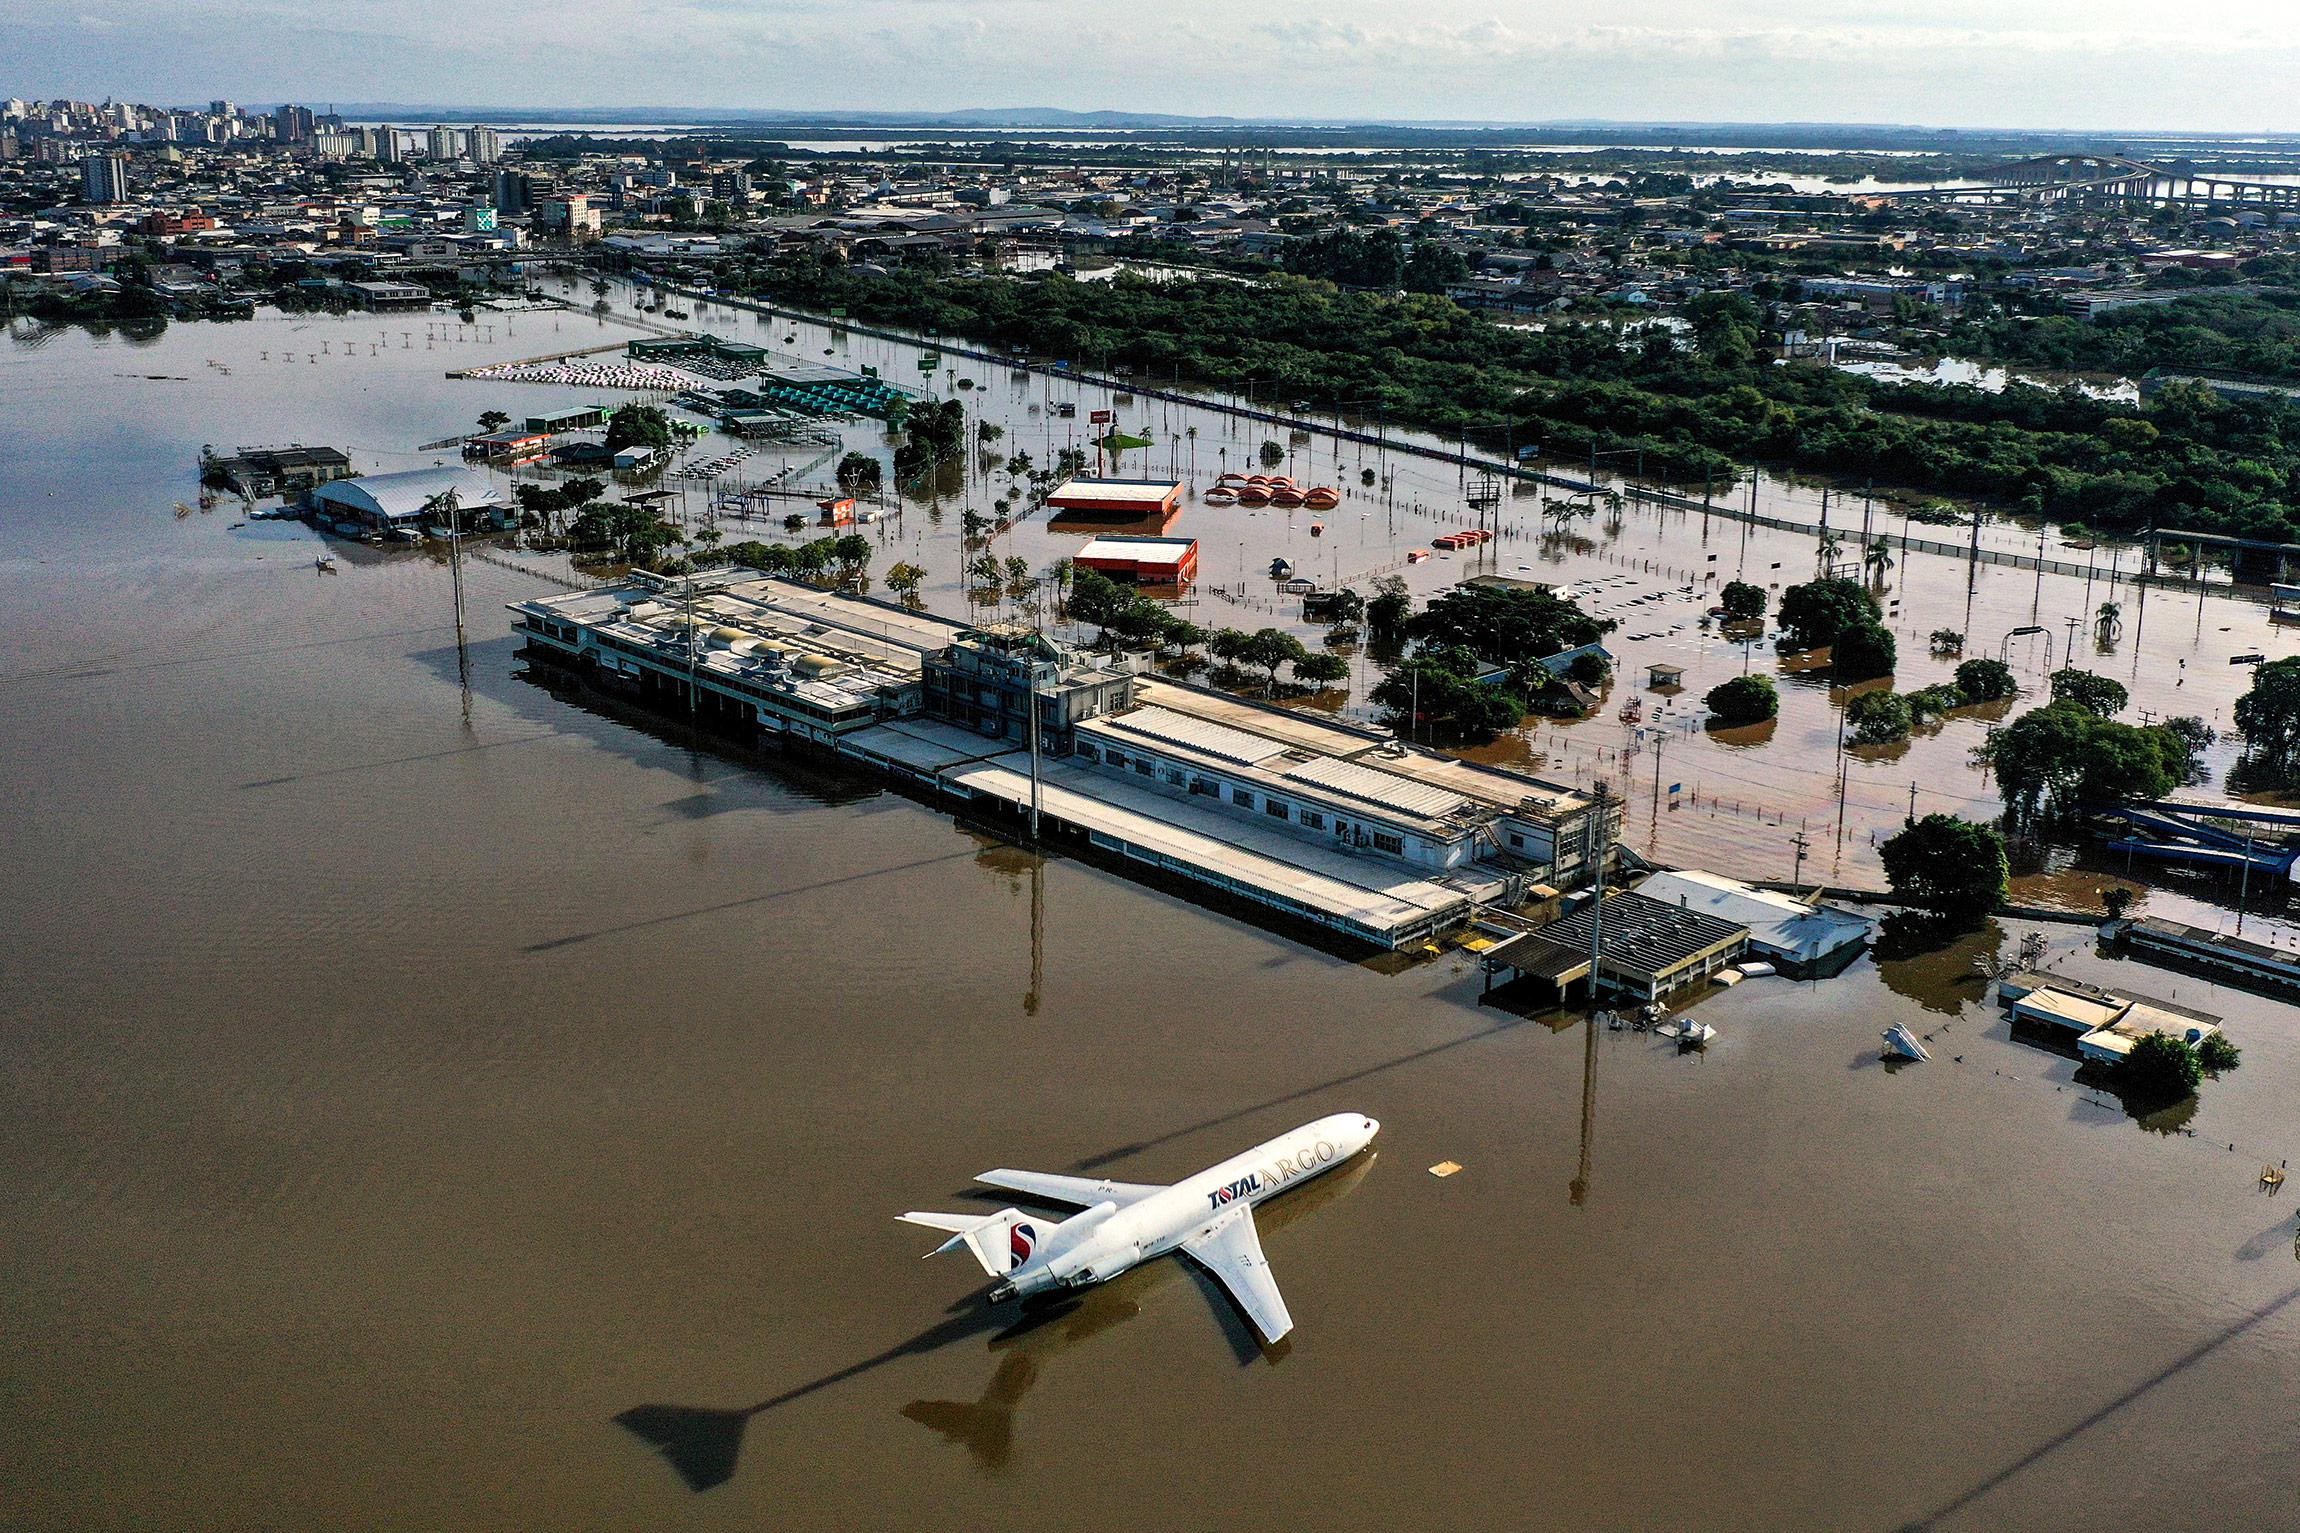 Наводнение затопило юг Бразилии. Фотогалерея